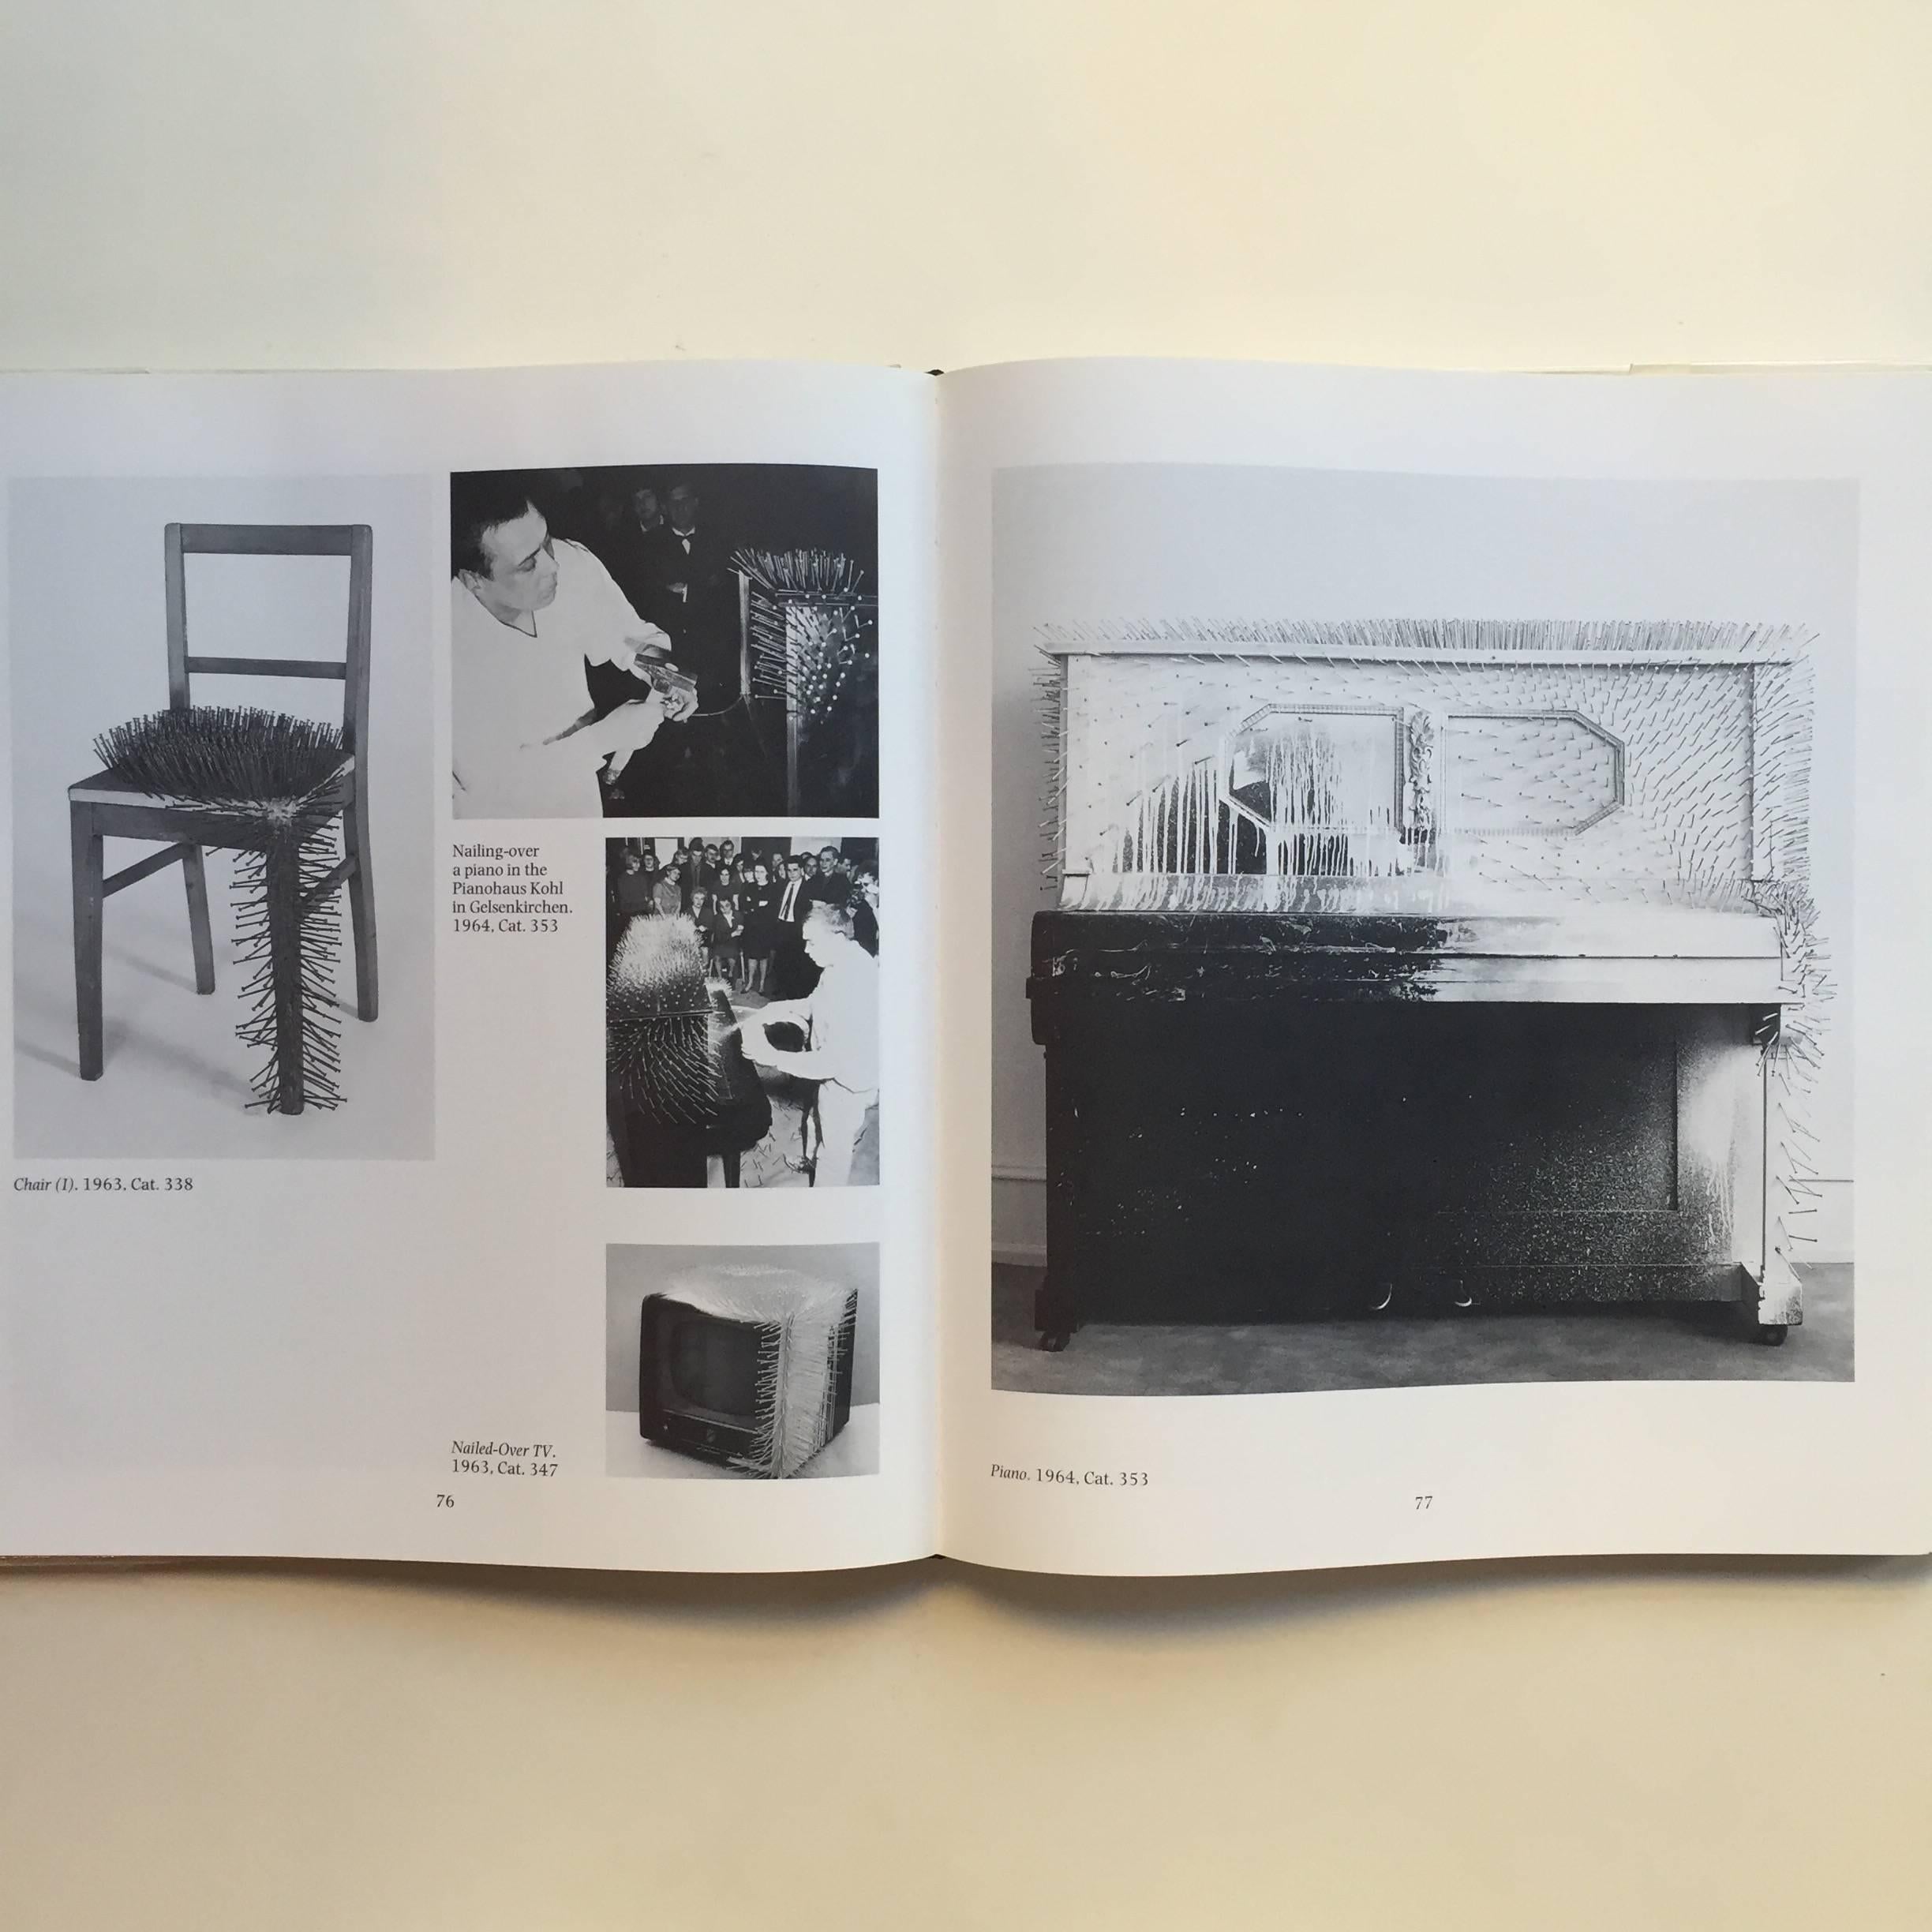 Erste Ausgabe, veröffentlicht von Harry N. Abrams, New York, 1986.

Mit einem ausführlichen Text von Dieter Honisch dokumentiert dieses seltene Buch das Werk des Malers, Bildhauers und Performance-Künstlers Gunther Uecker. Uecker, der vielen durch